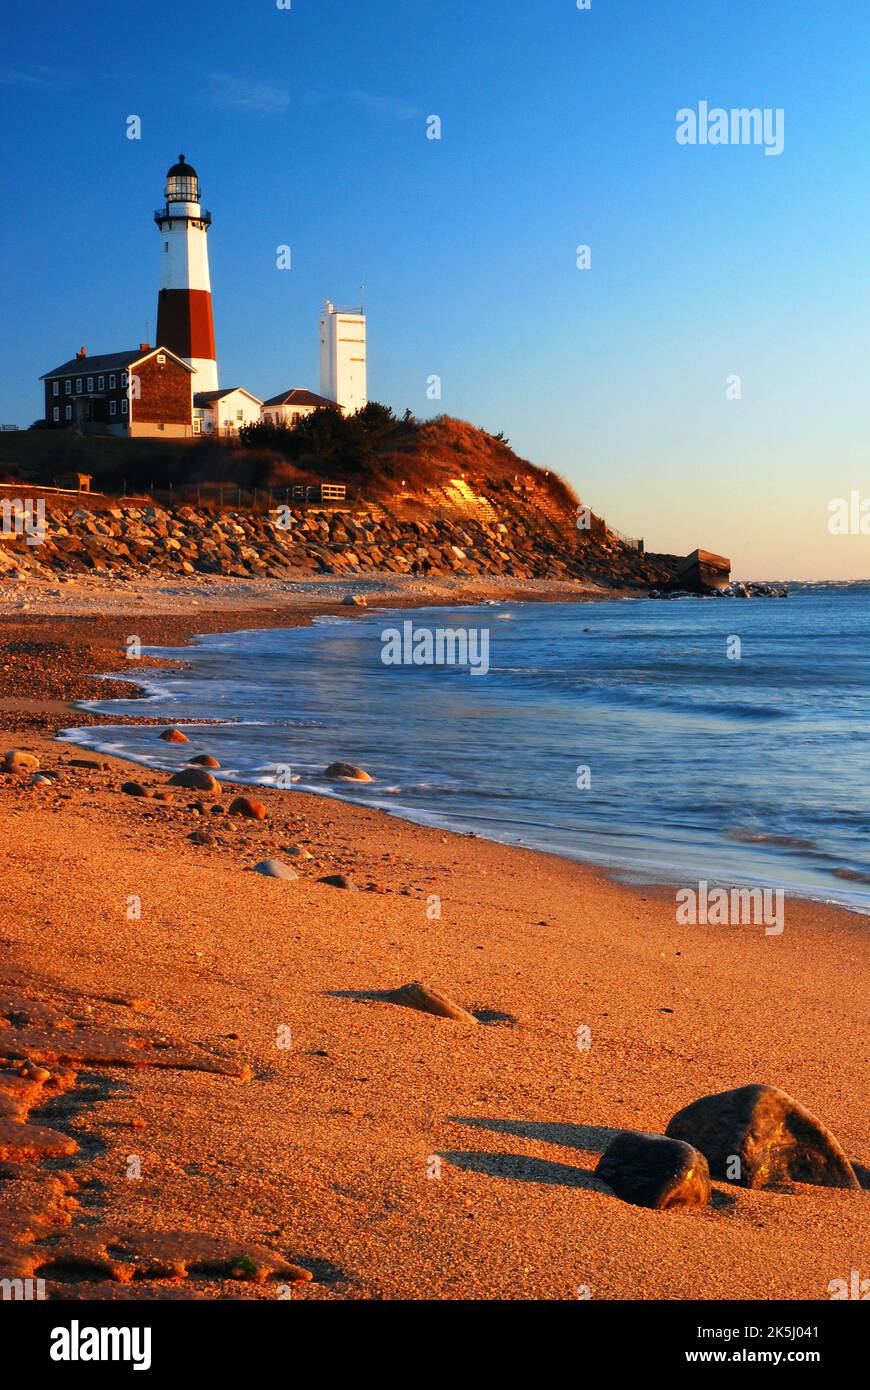 Der Montauk Point Lighthouse steht an der östlichen Spitze von Long Island und wurde von George Washington in Auftrag gegeben Stockfoto